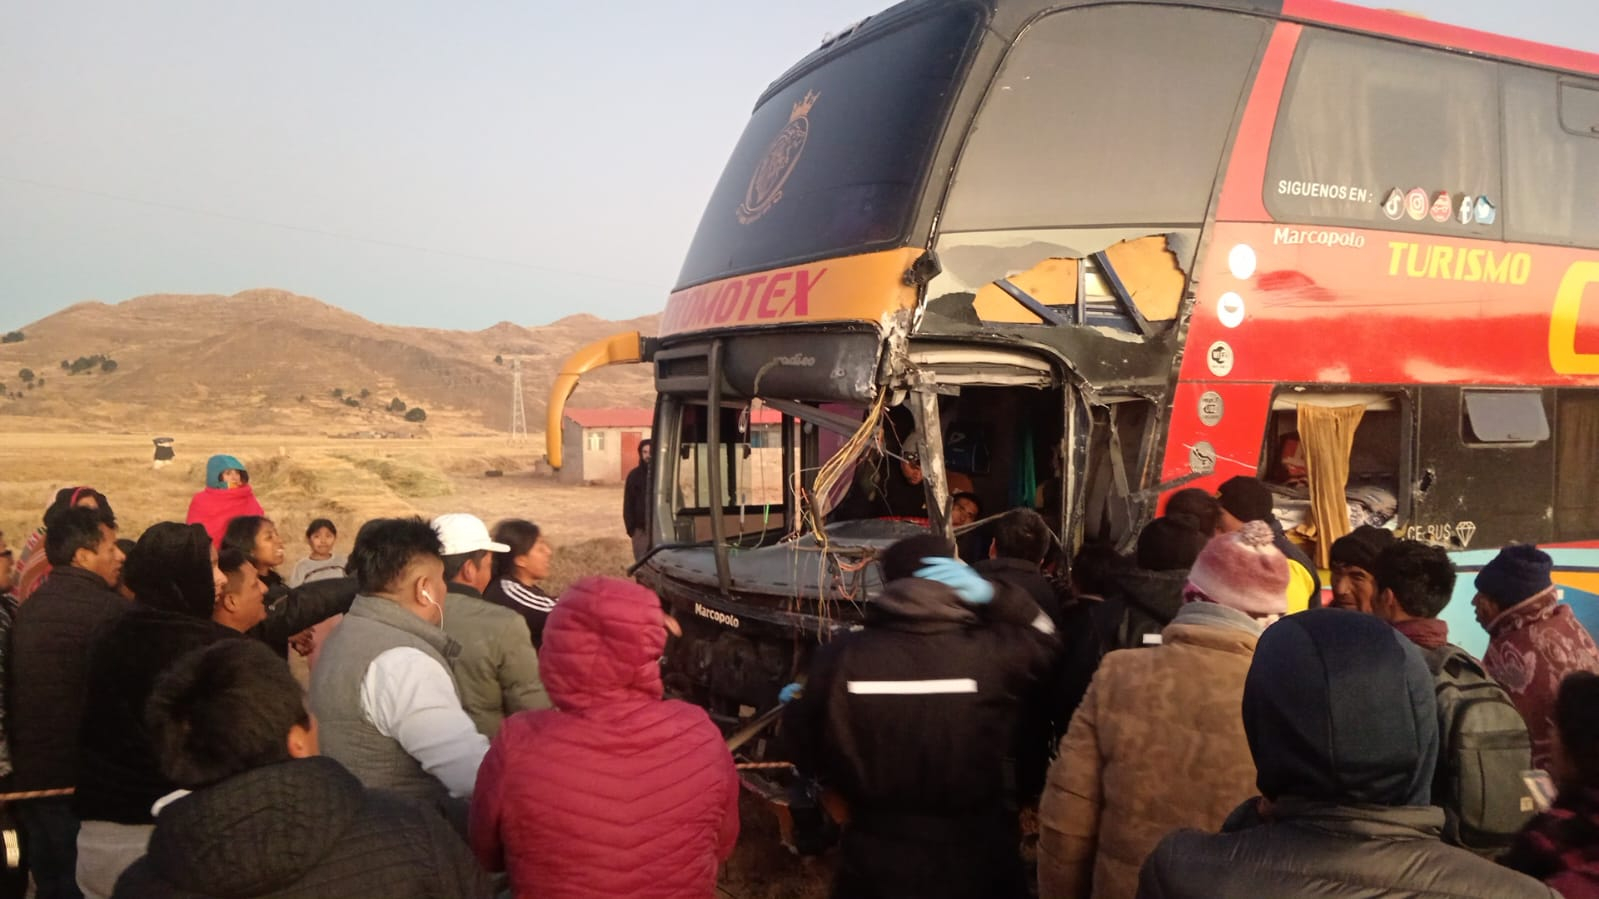 
                                 Juliaca: choque de bus contra minivan deja un saldo de 4 muertos y varios heridos 
                            